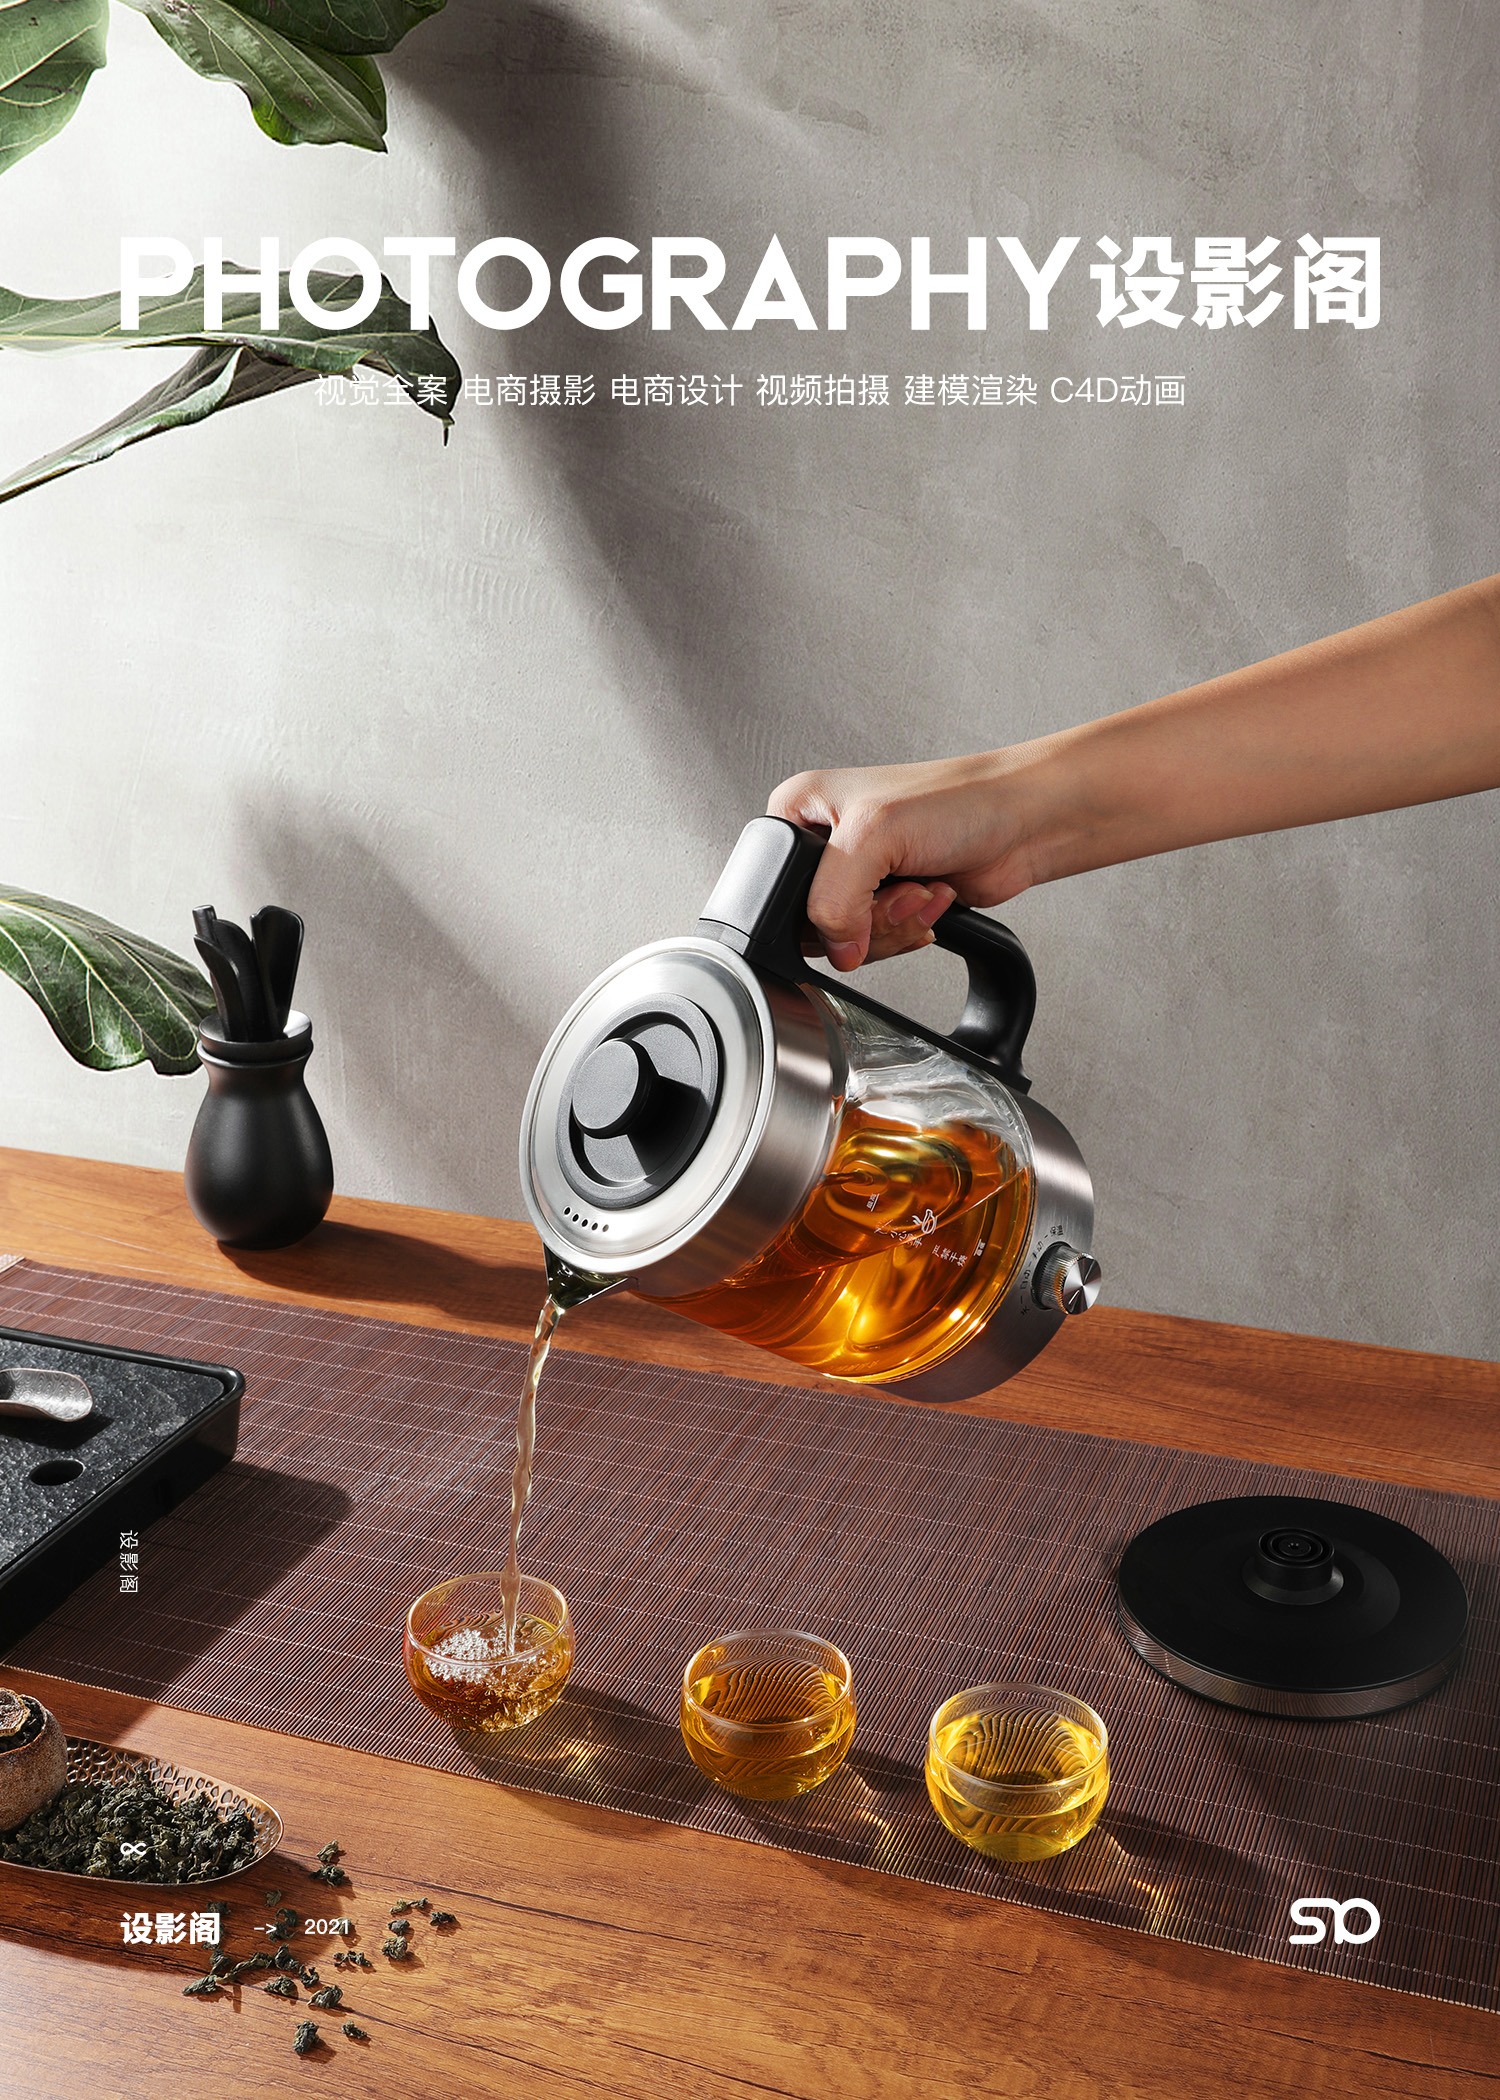 煮茶器 产品拍摄 x 2